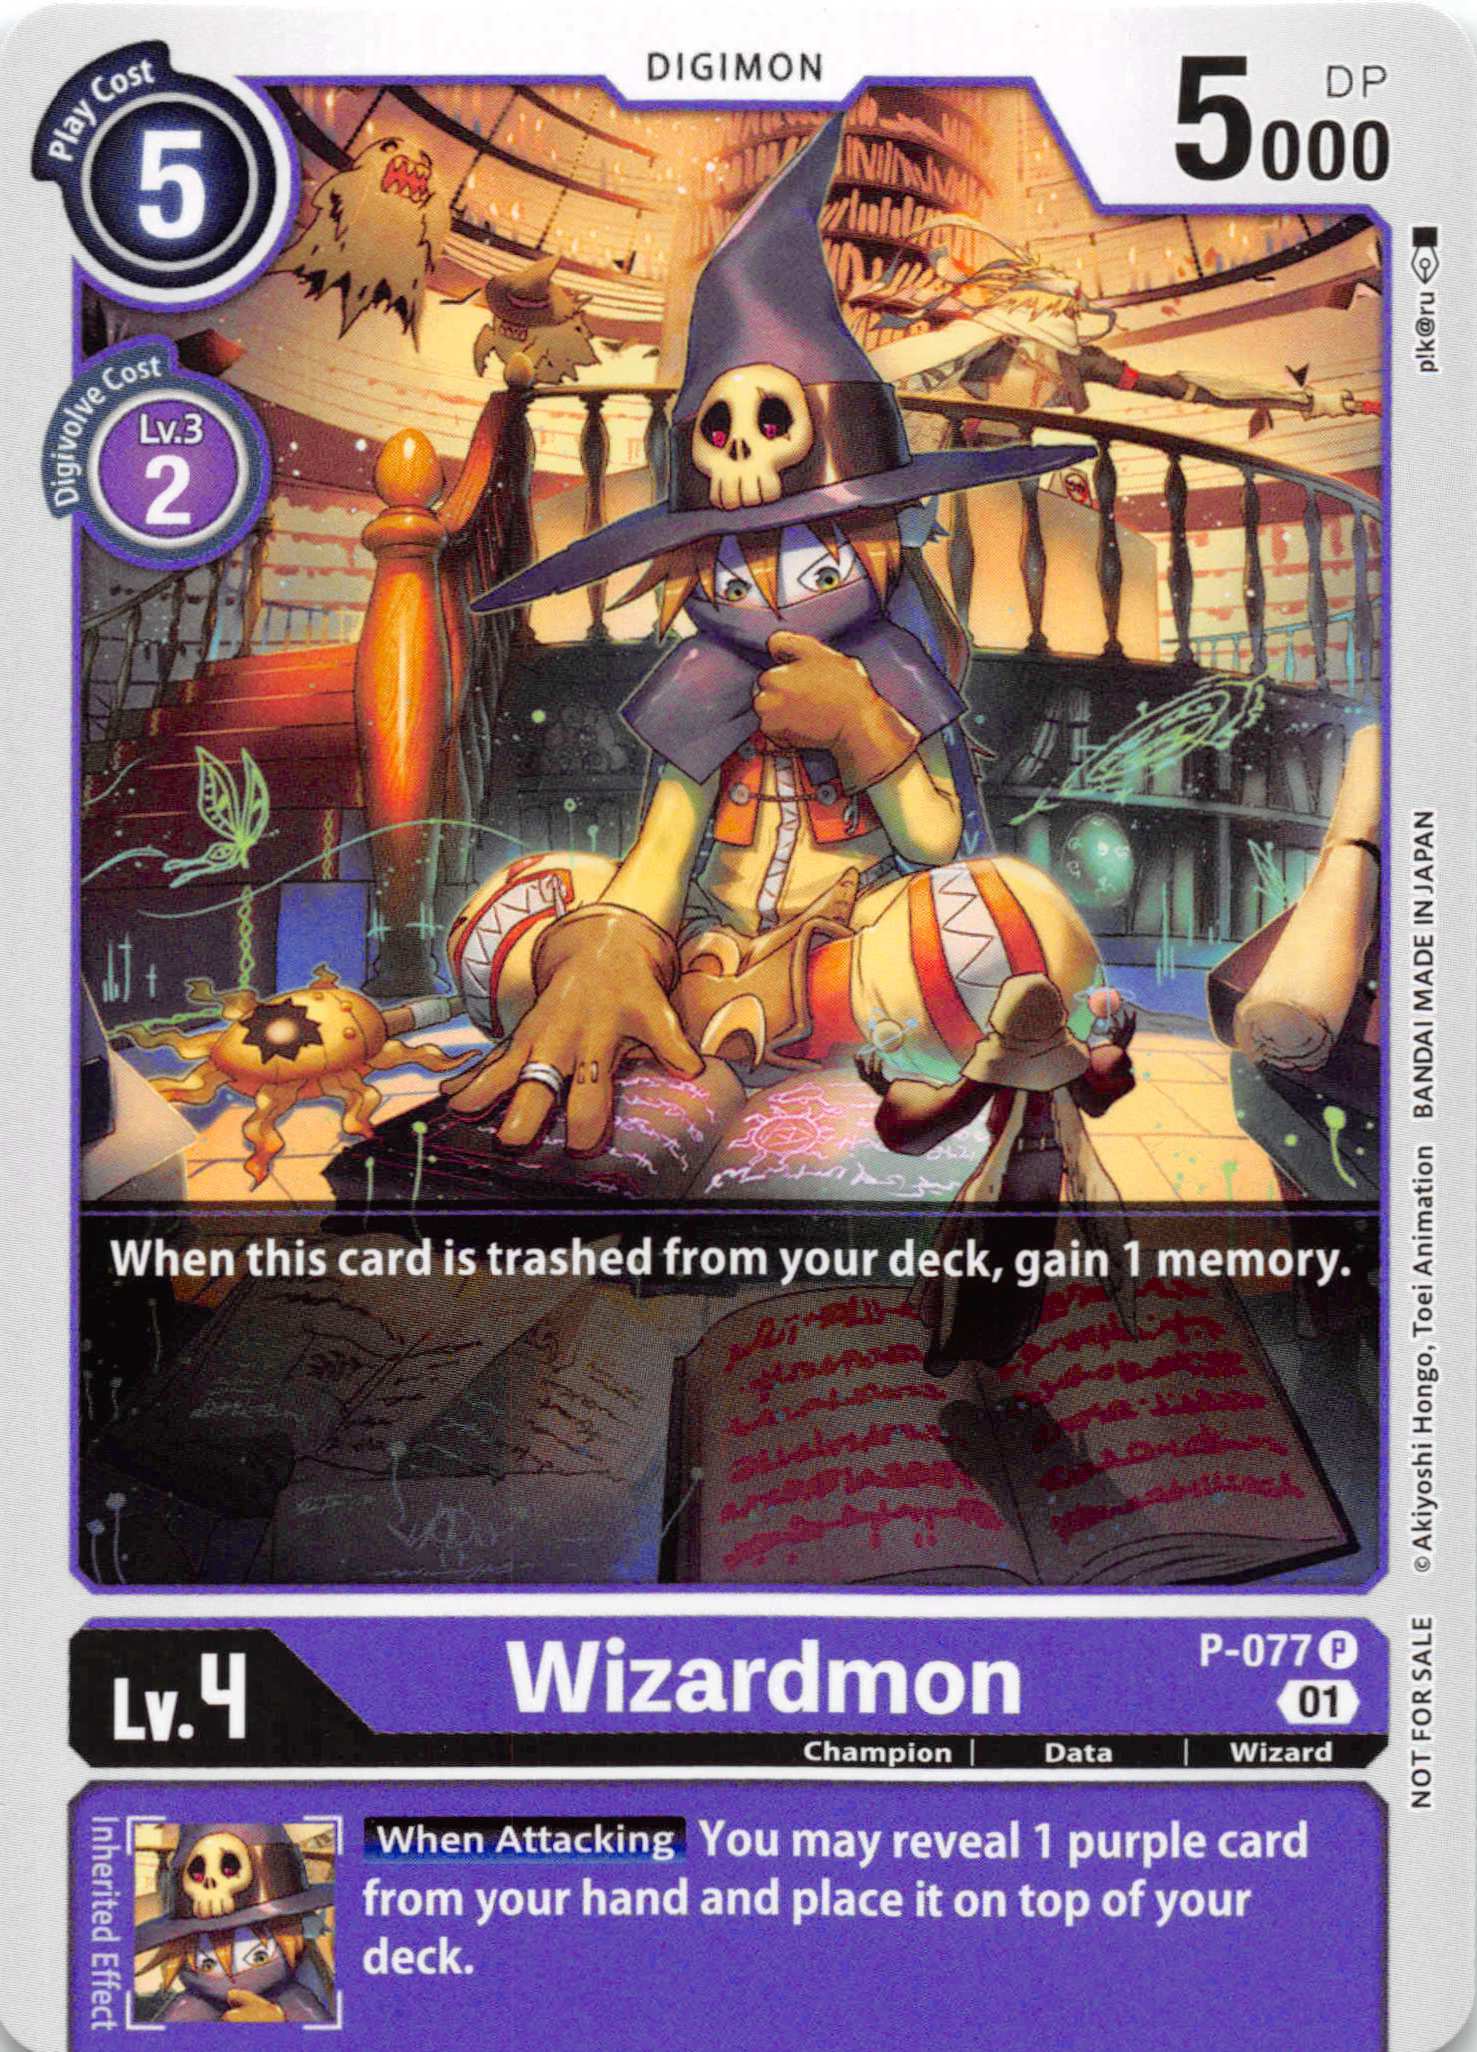 Wizardmon - P-077 [P-077] [Digimon Promotion Cards] Foil